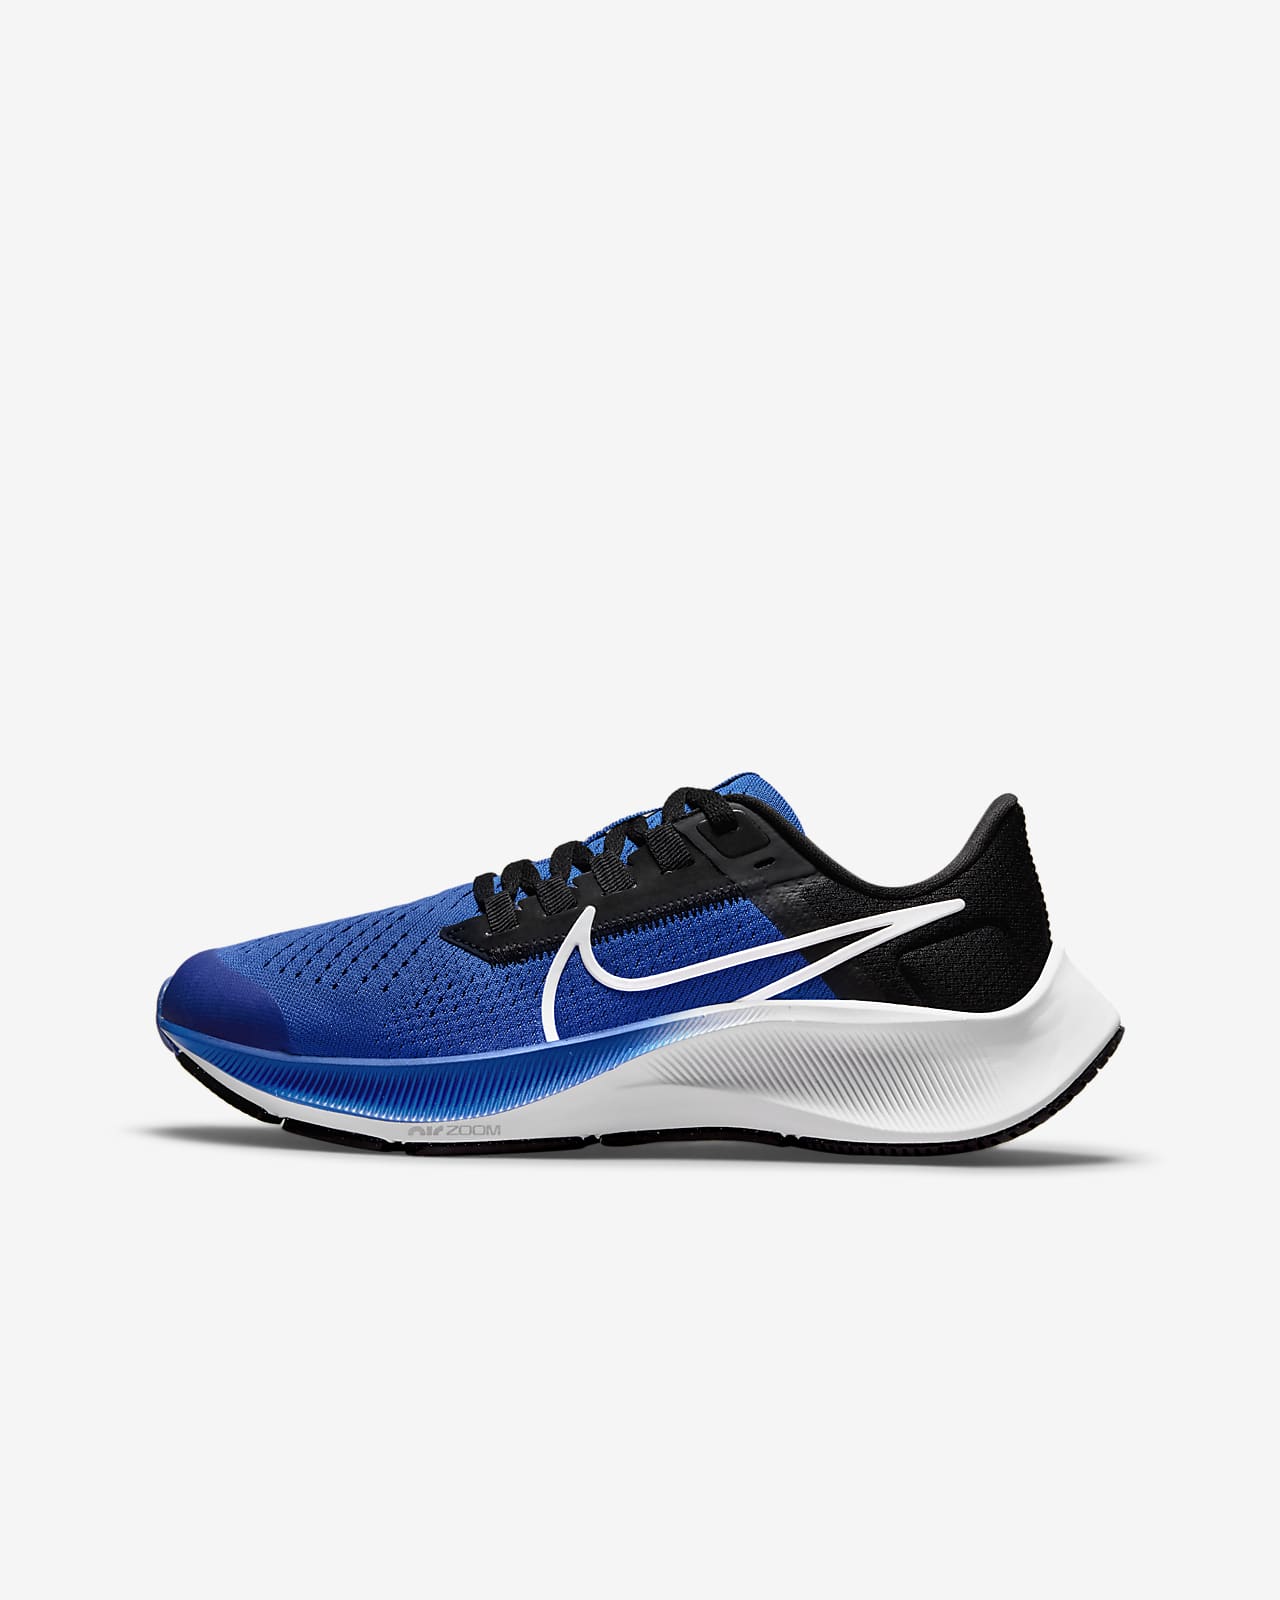 Παπούτσια για τρέξιμο σε δρόμο Nike Air Zoom Pegasus 38 για μικρά/μεγάλα παιδιά